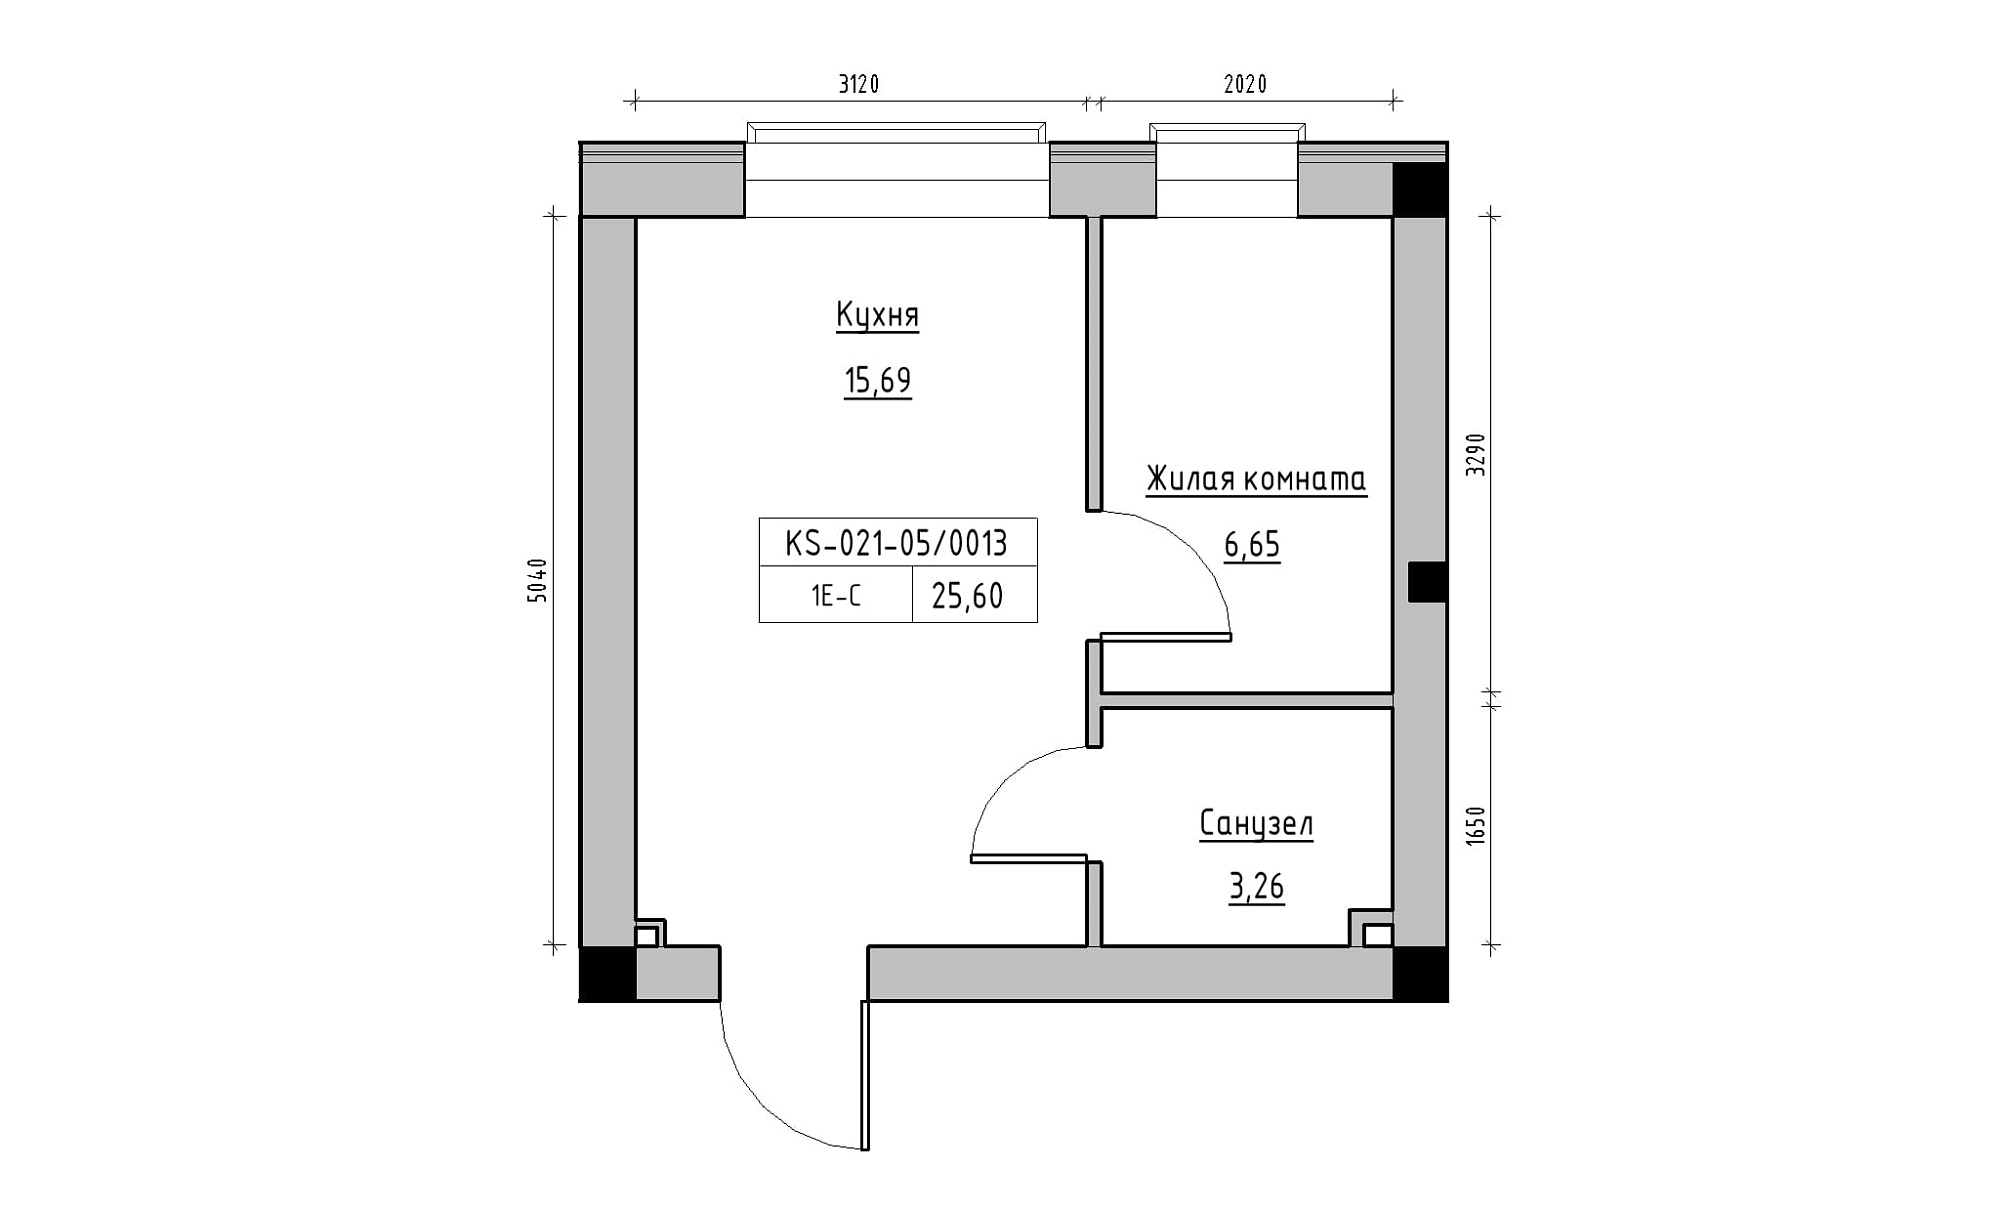 Планування 1-к квартира площею 25.6м2, KS-021-05/0013.